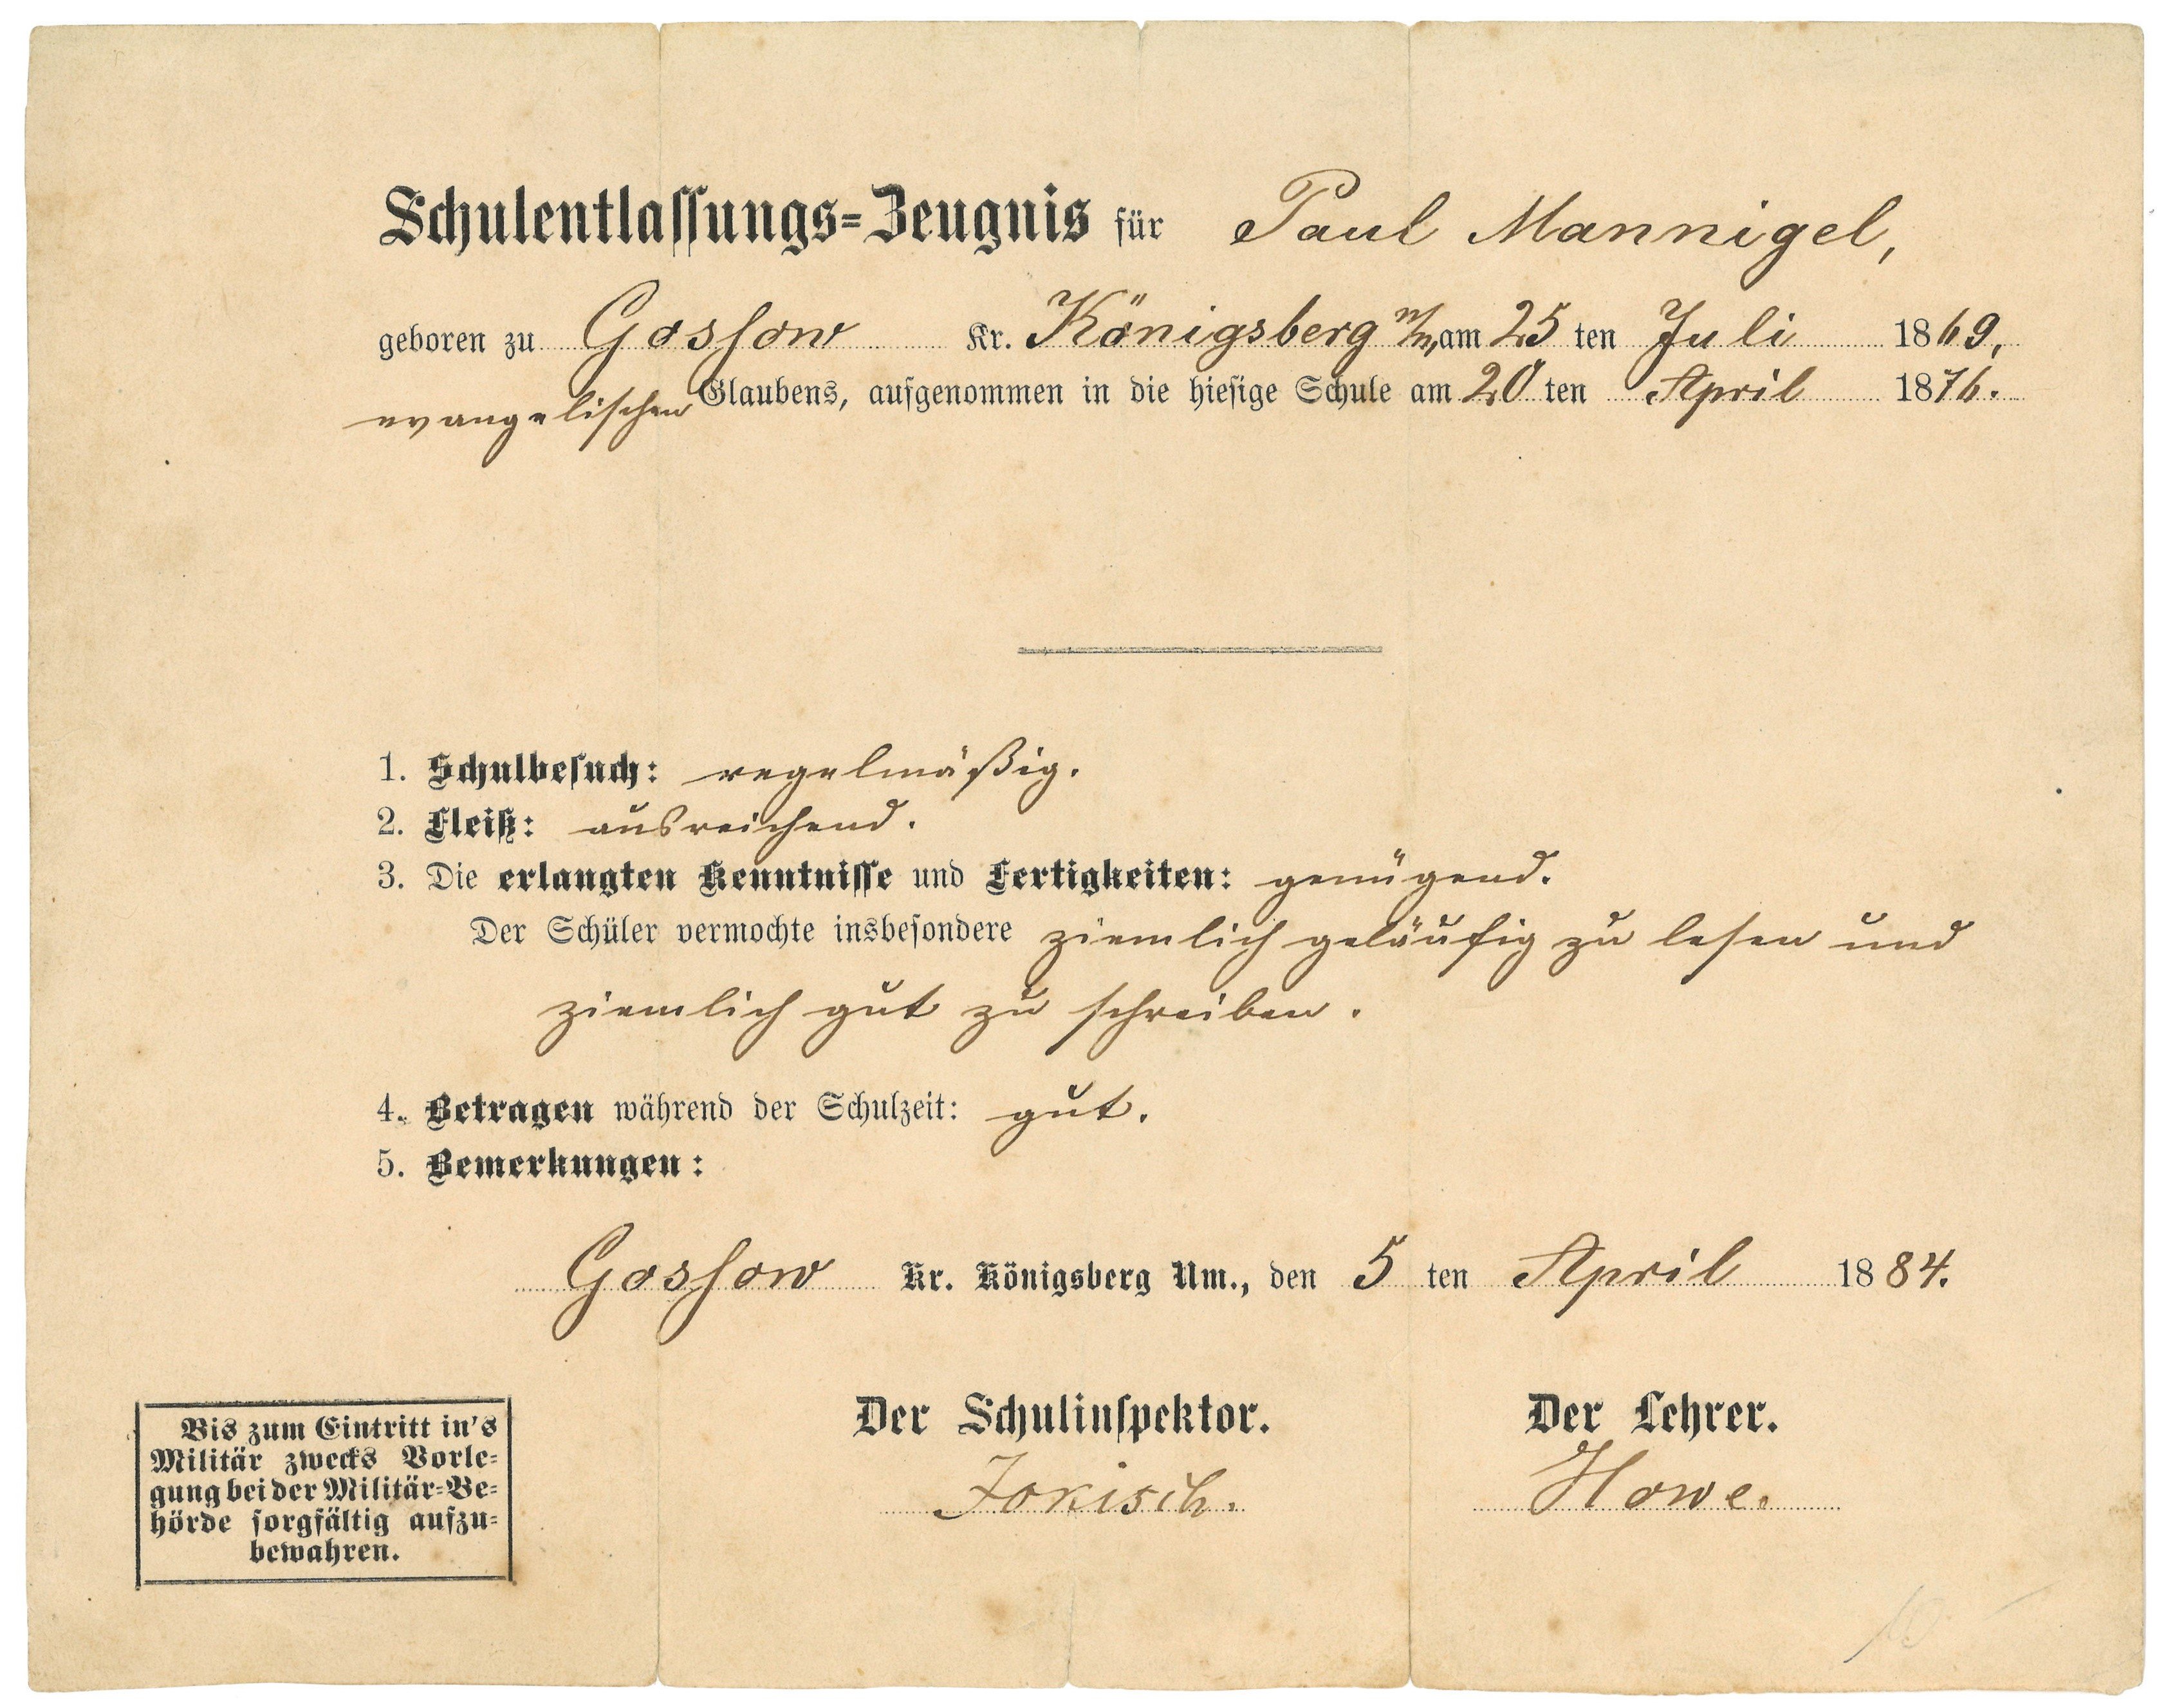 Schulentlassungszeugnis für Paul Mannigel in Gossow (Kr. Königsberg/Nm.) [Goszków] 1884 (Landesgeschichtliche Vereinigung für die Mark Brandenburg e.V., Archiv CC BY)